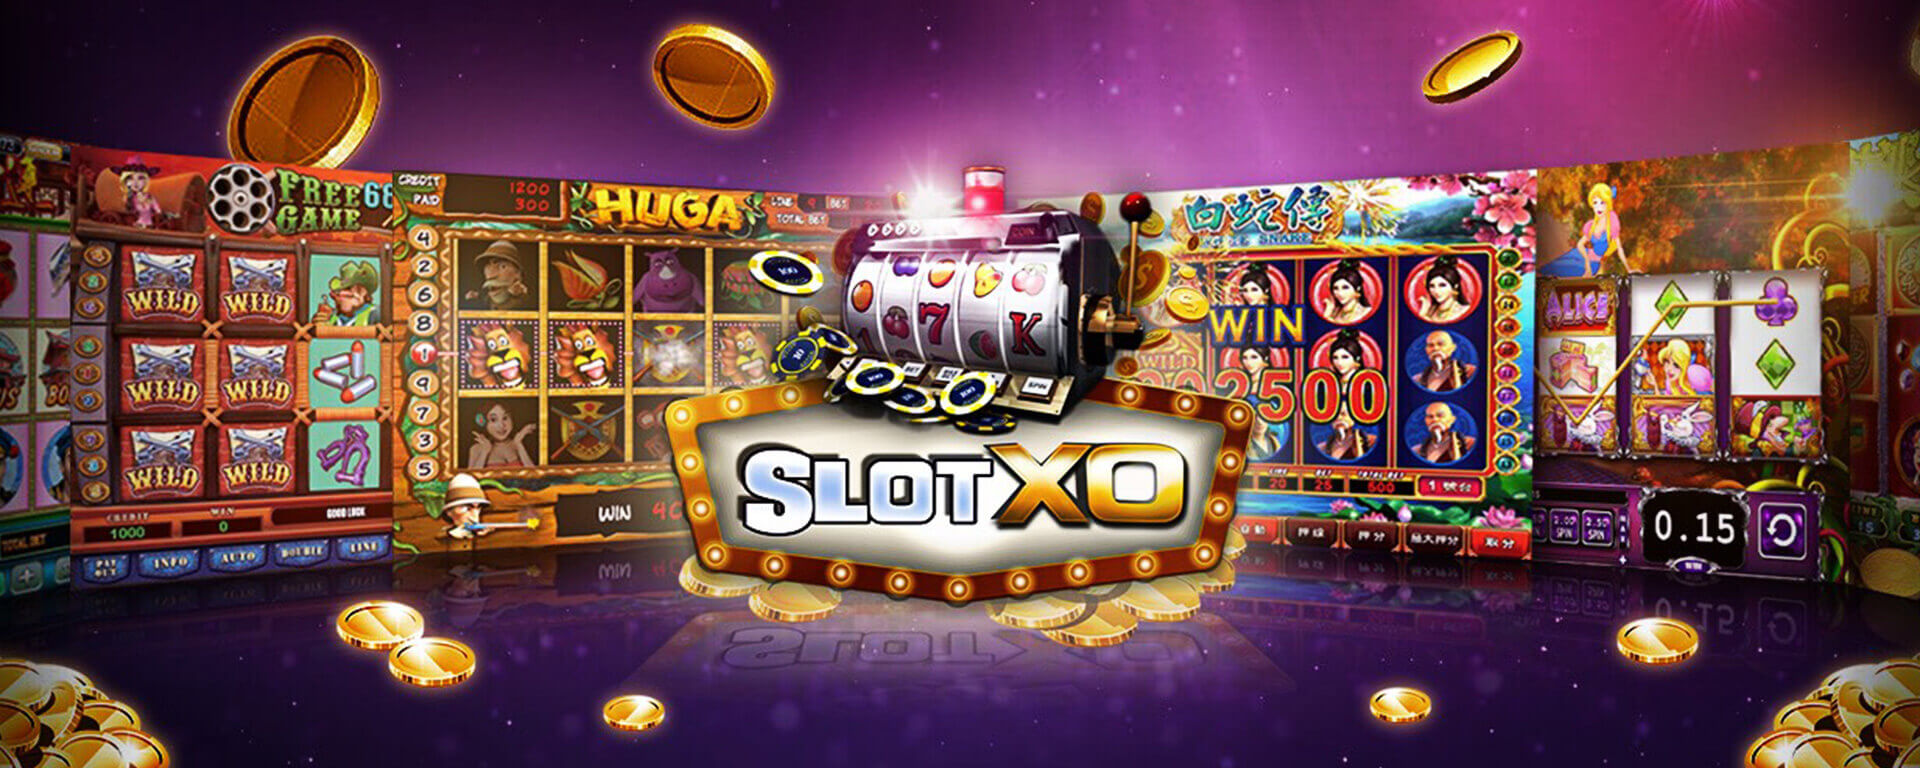 Slotxo สล็อตออนไลน์แห่งปี 2021